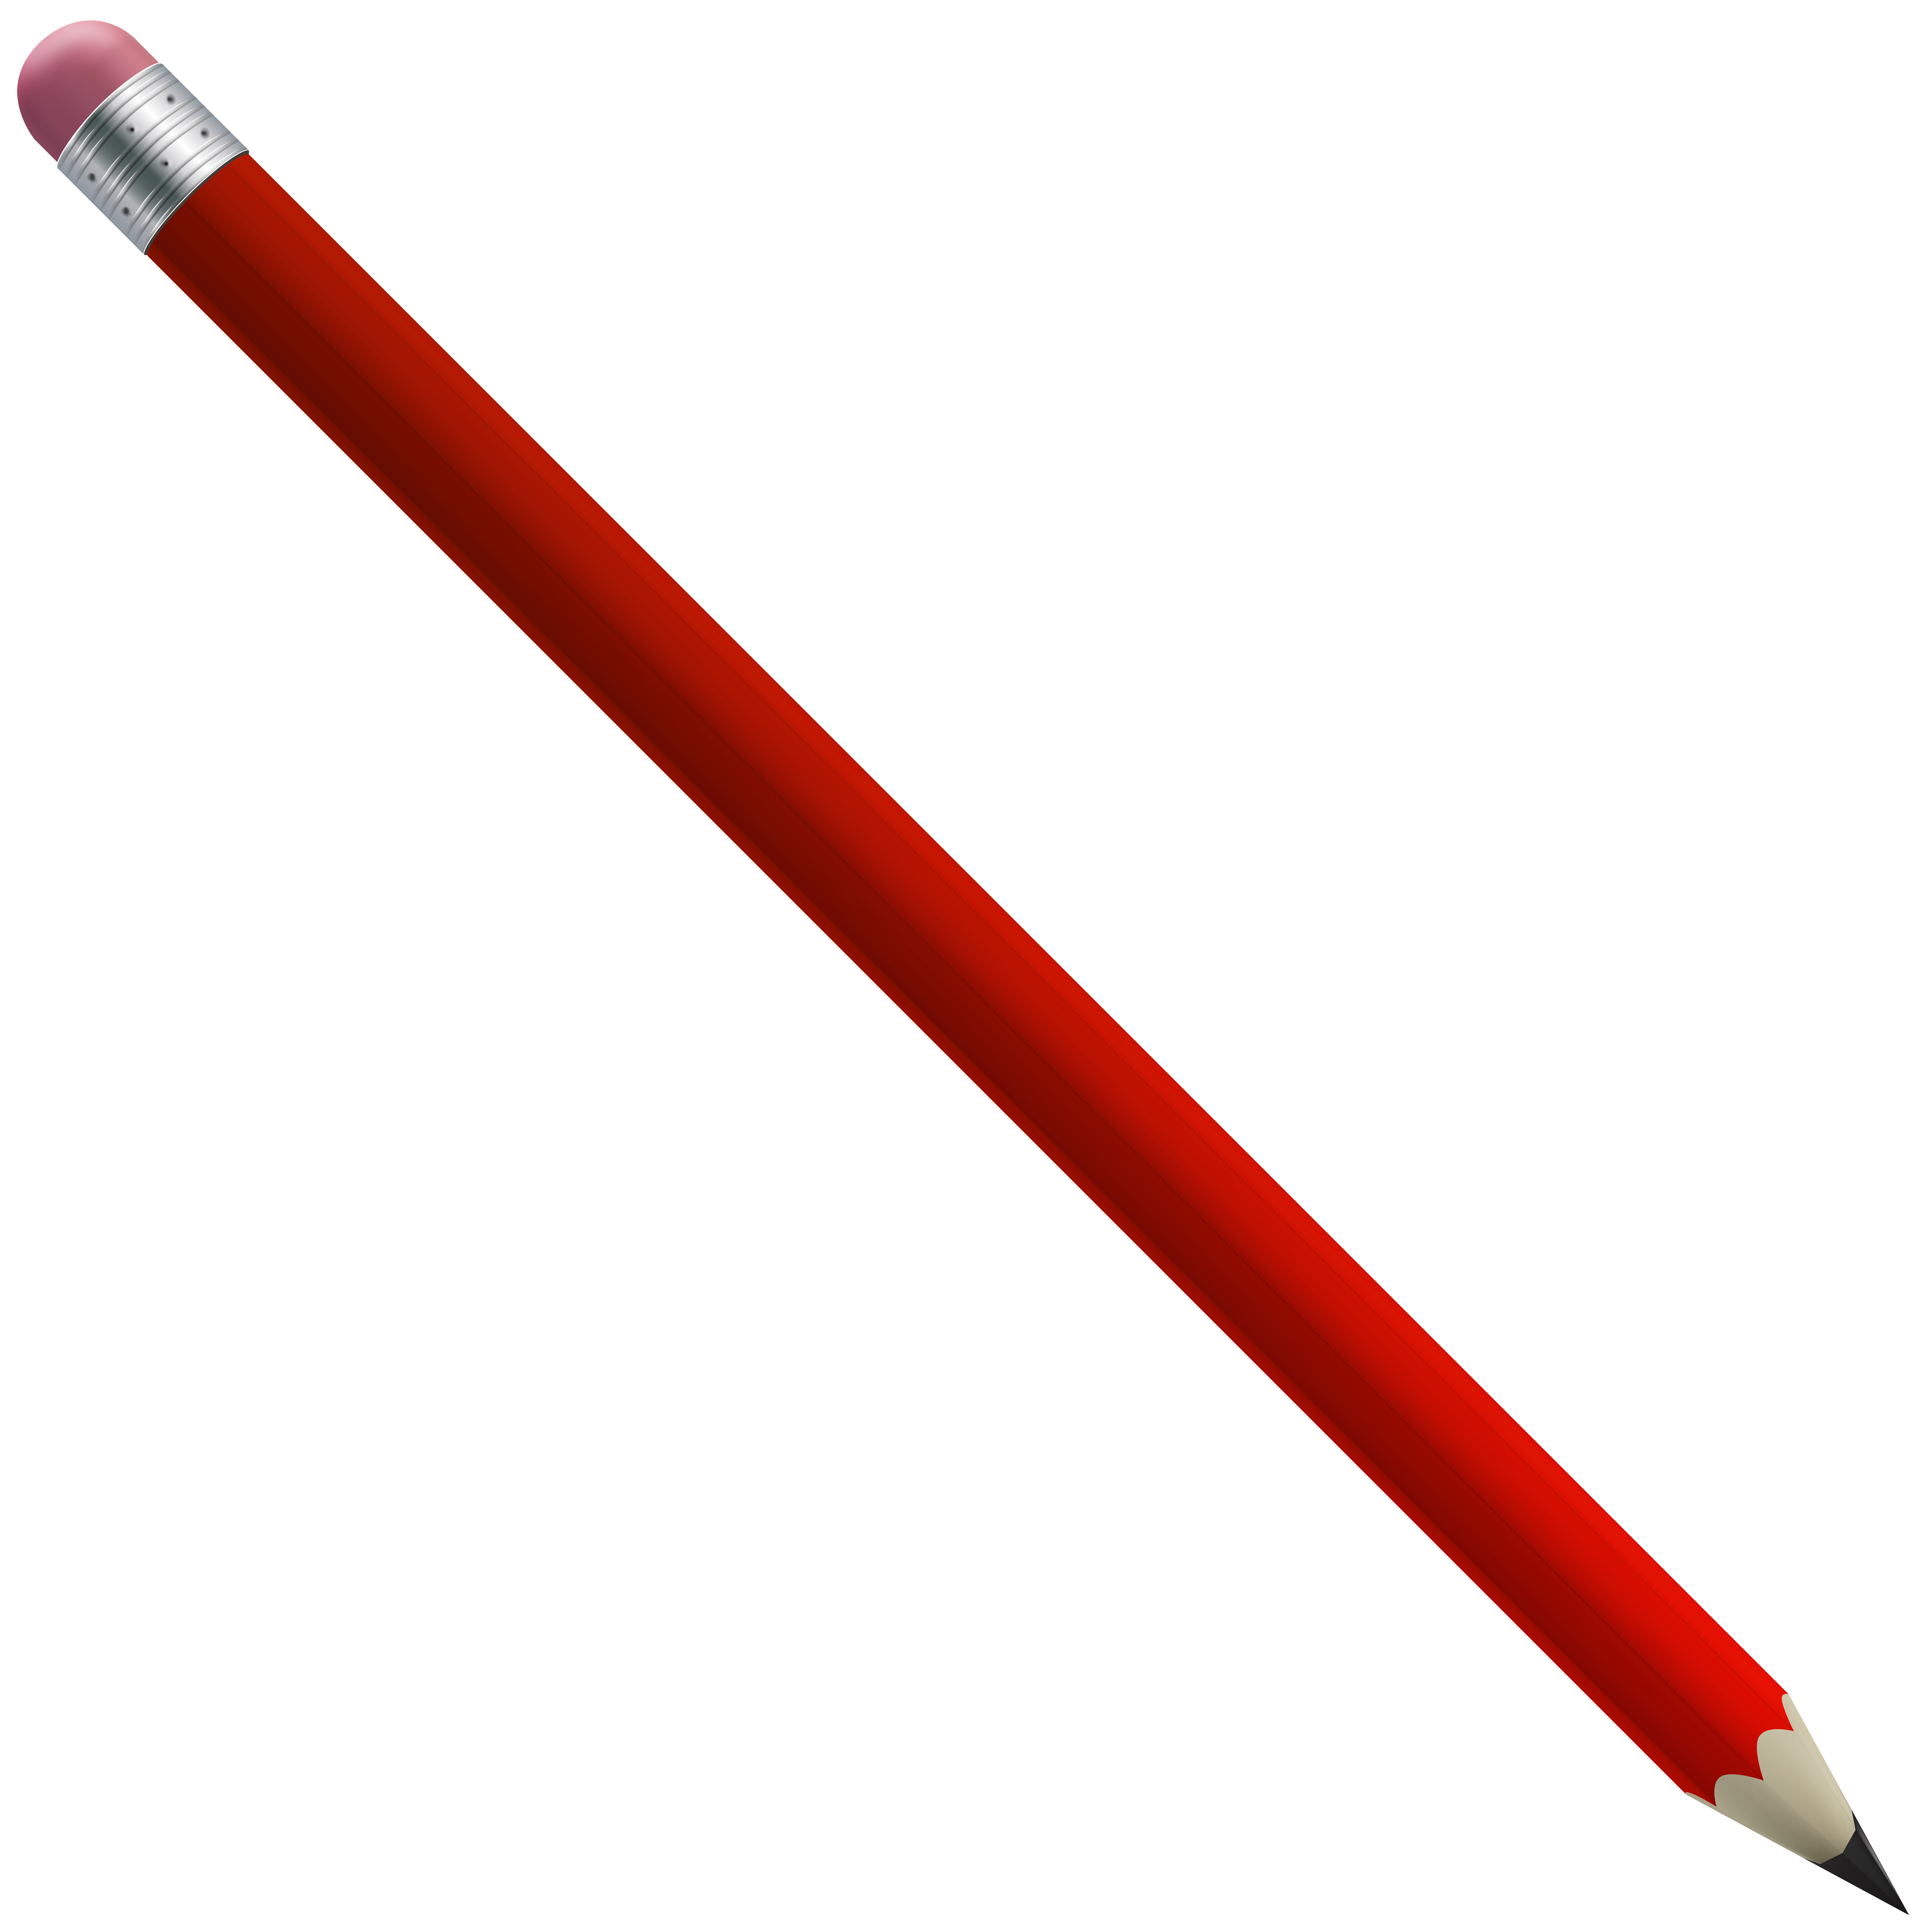 Red Pencil PNG Clip Art